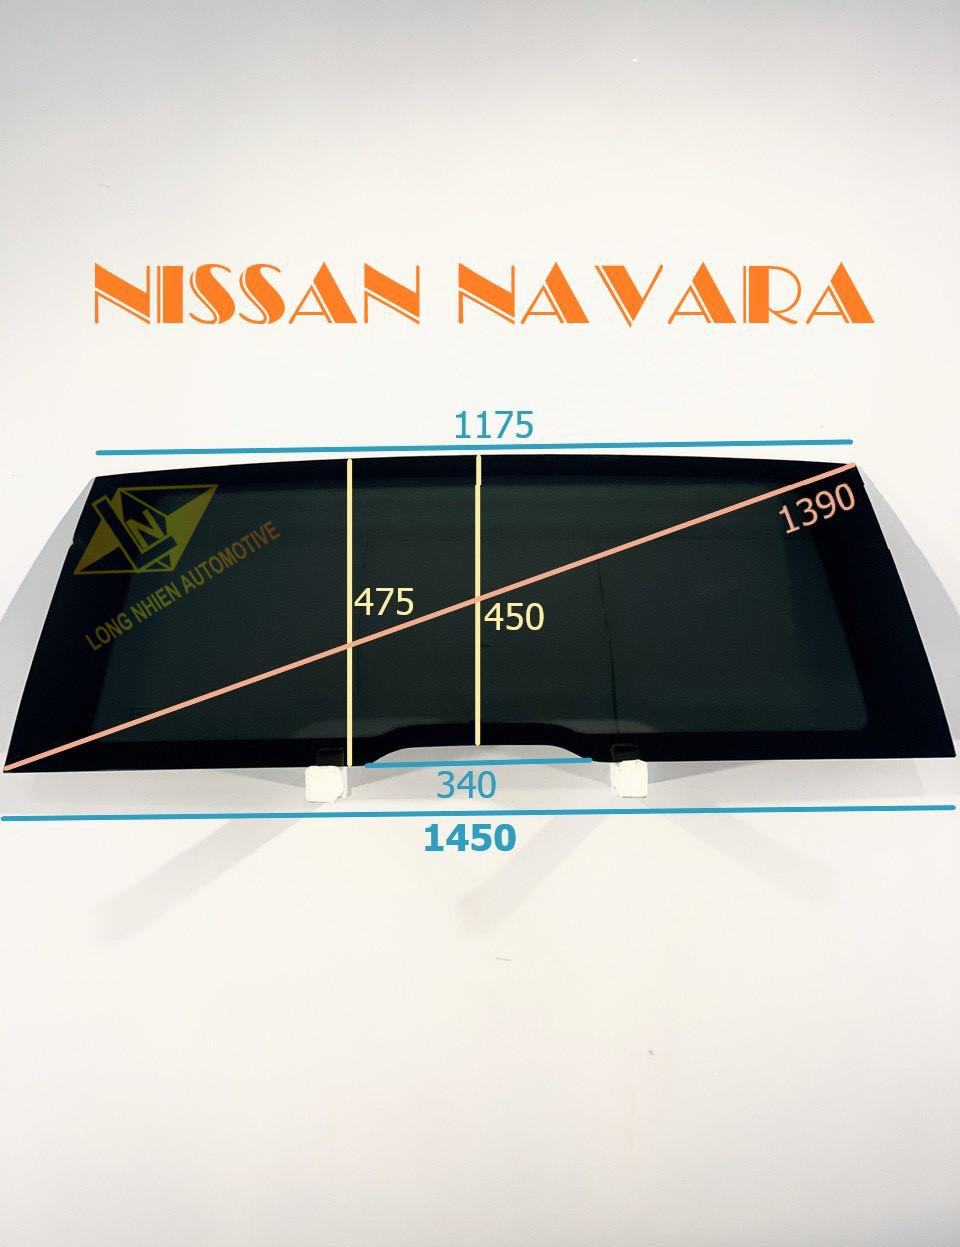 CỐP NISSAN NAVARA (475x1450)